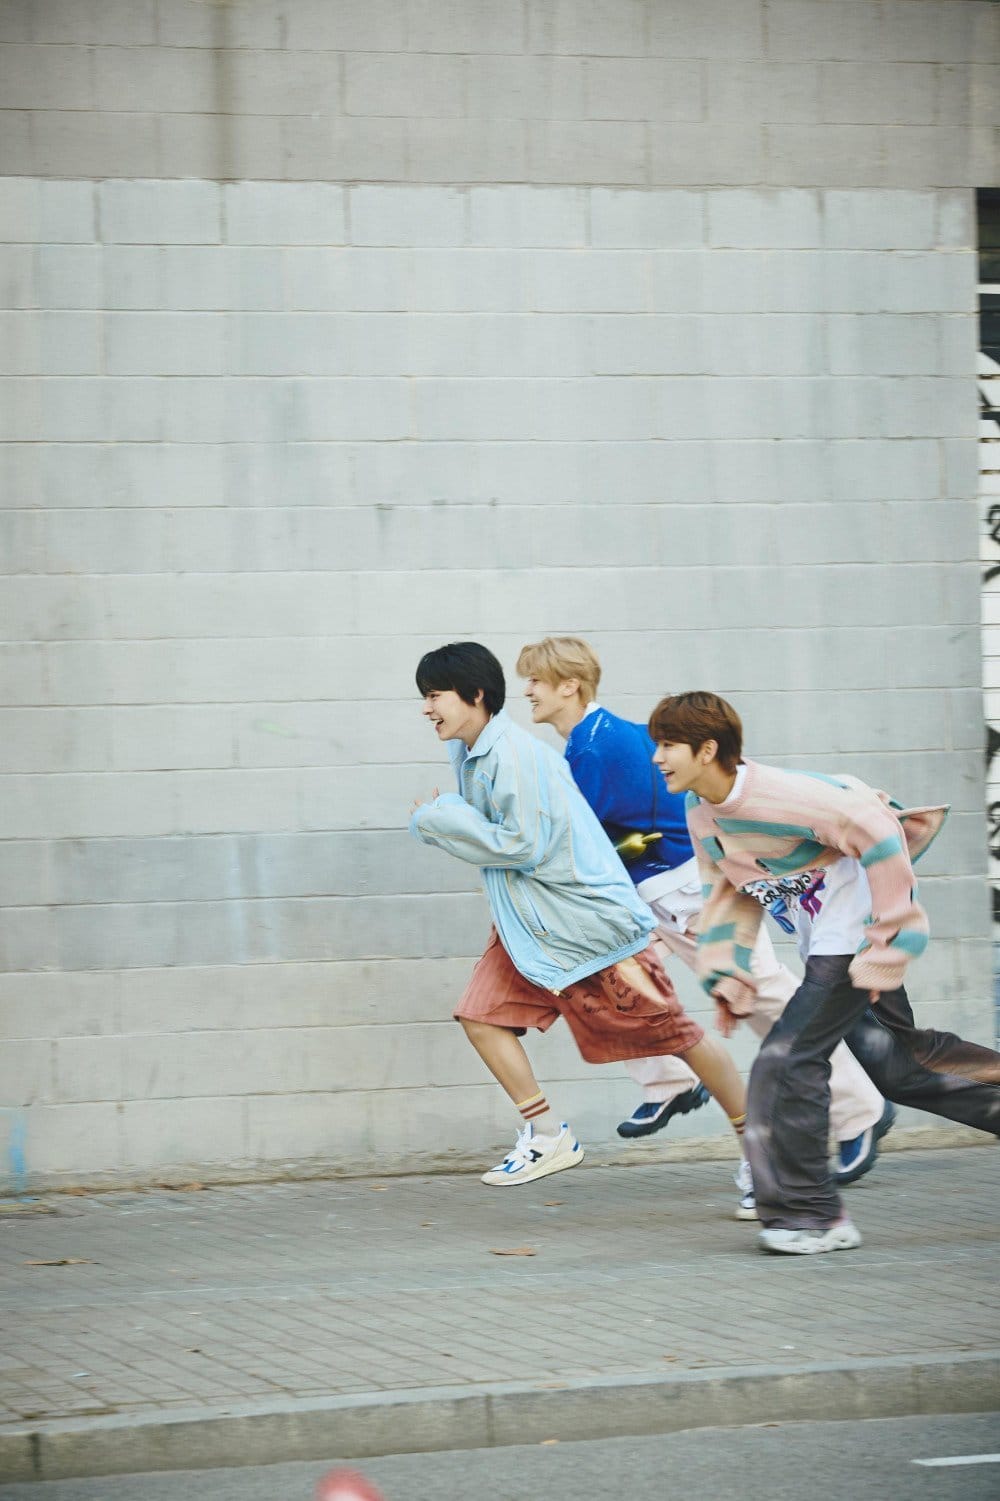 NCT WISH очаровывают новыми тизер-фото к дебютному синглу 'WISH'